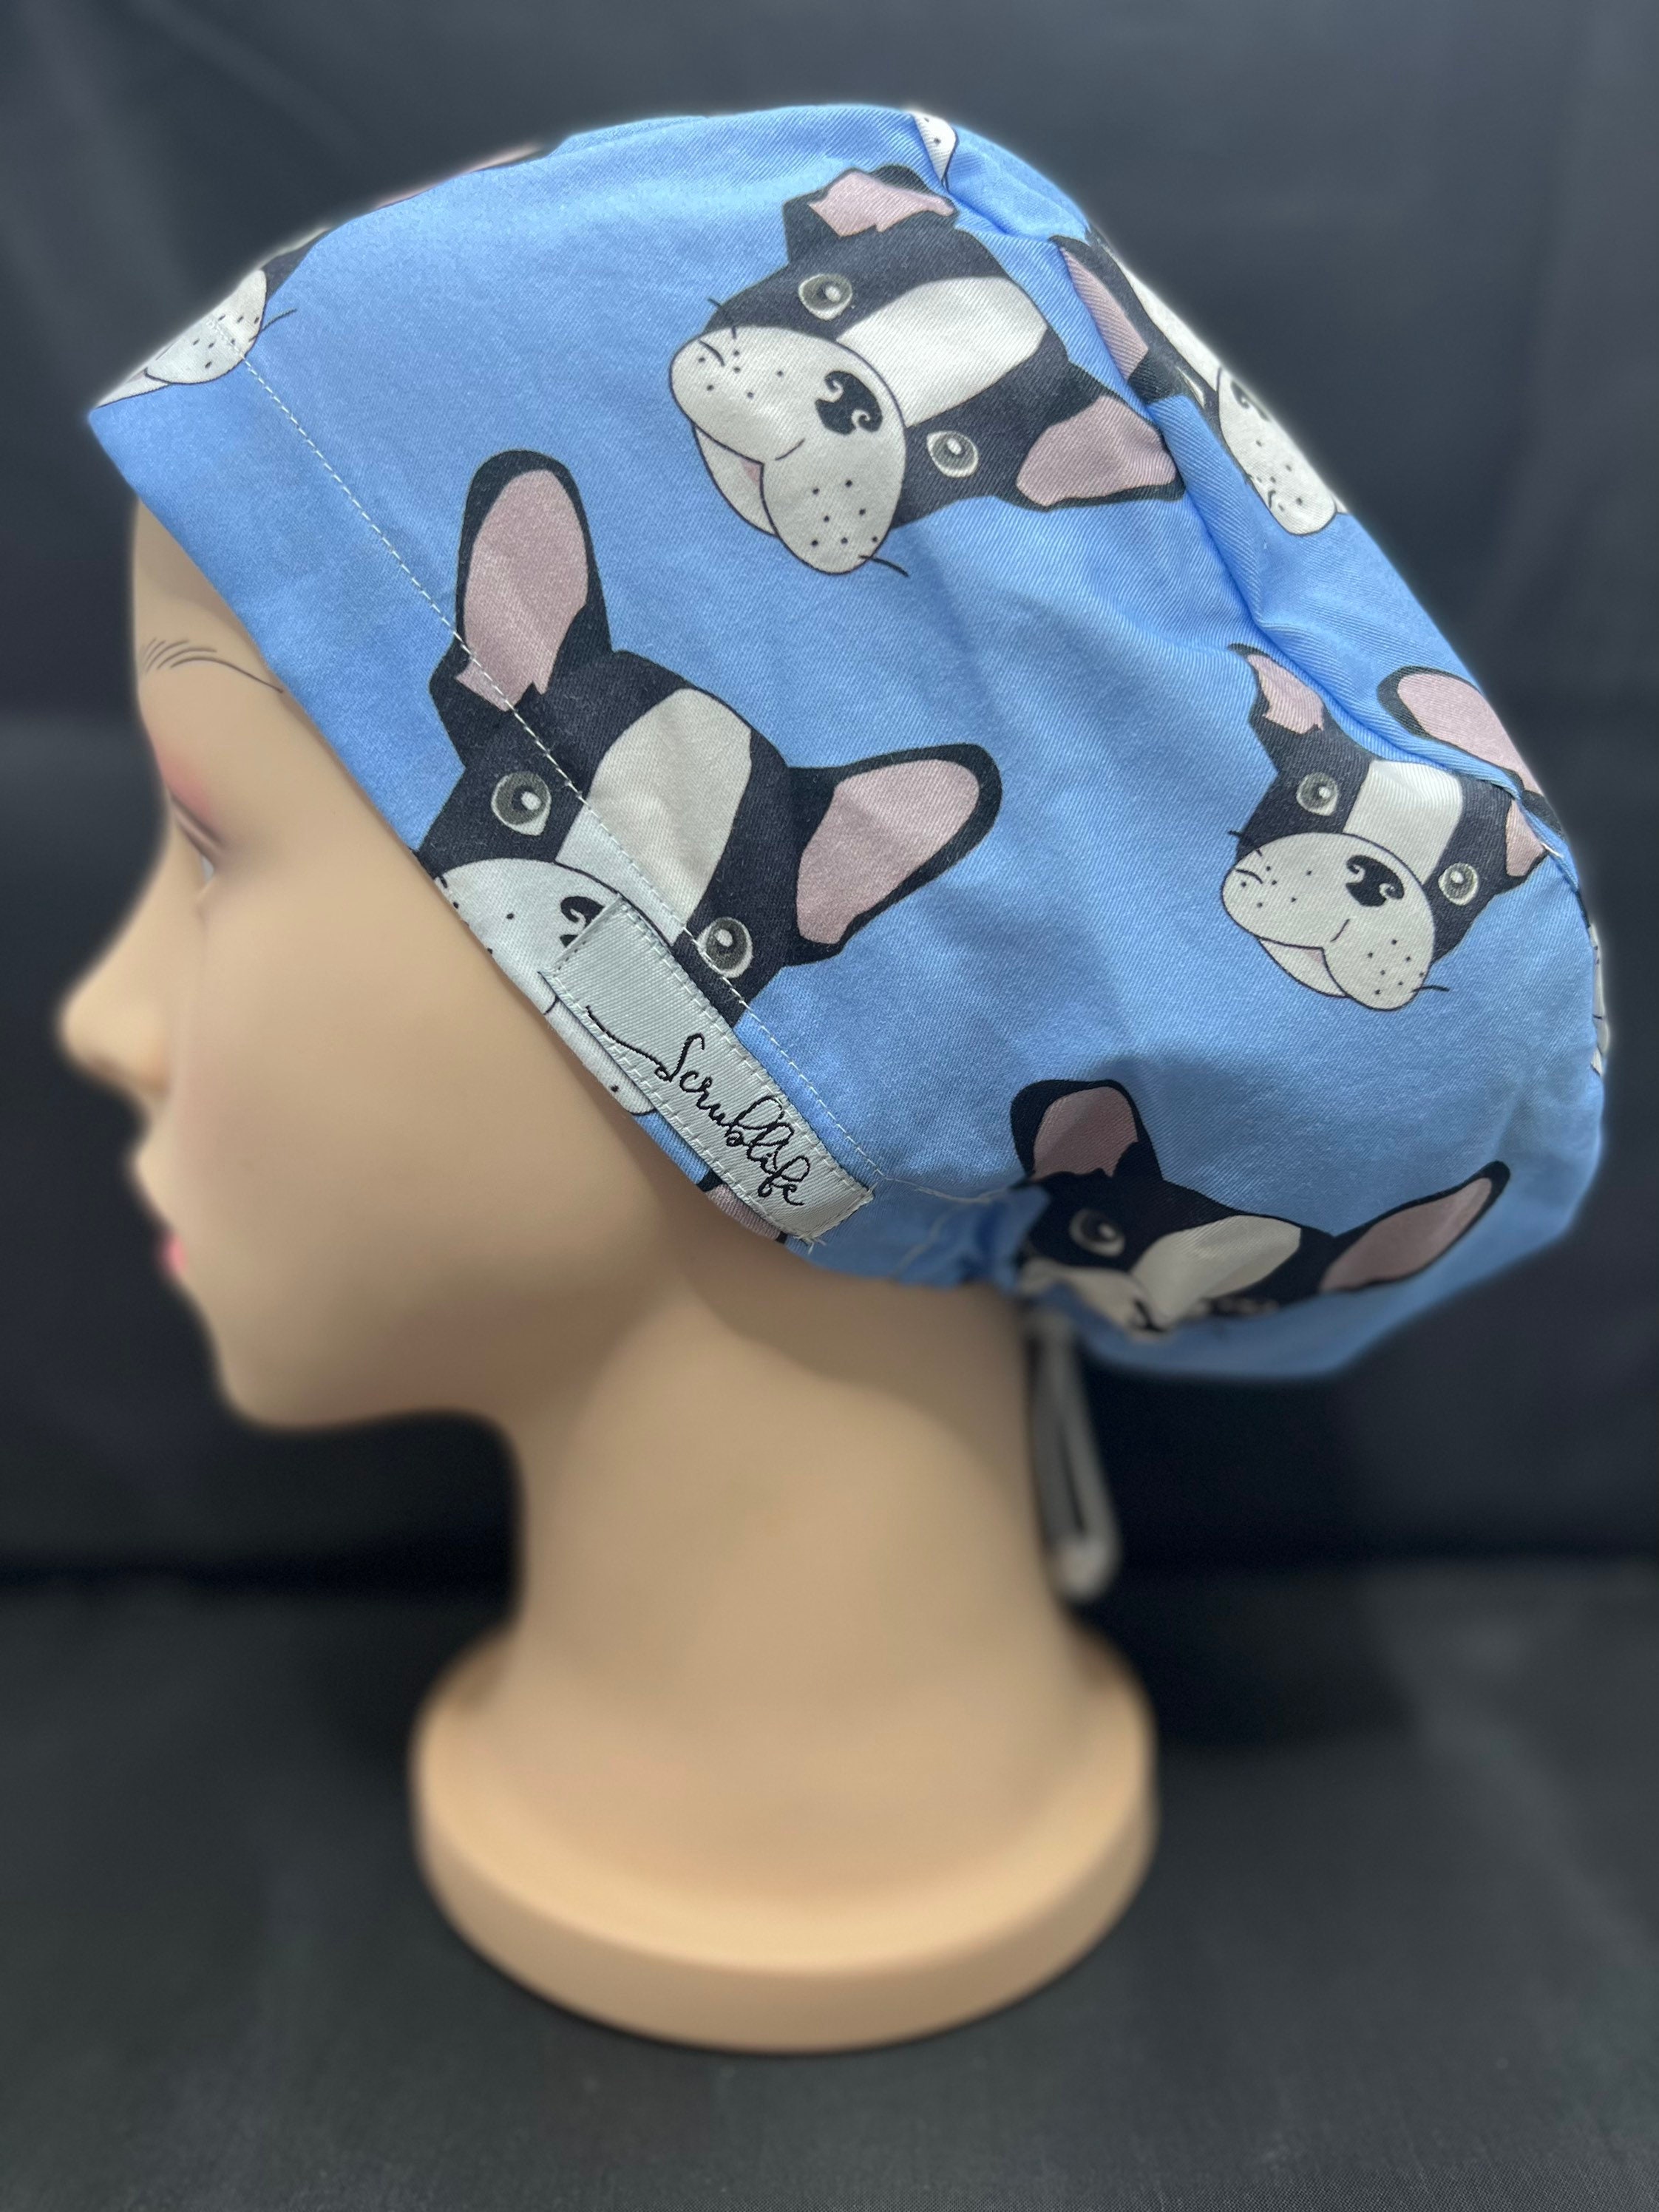 FENICAL Surgical Cap Practical Unique Animal Dog Cap Surgery Hat for Nurses Pharmacists Doctors 